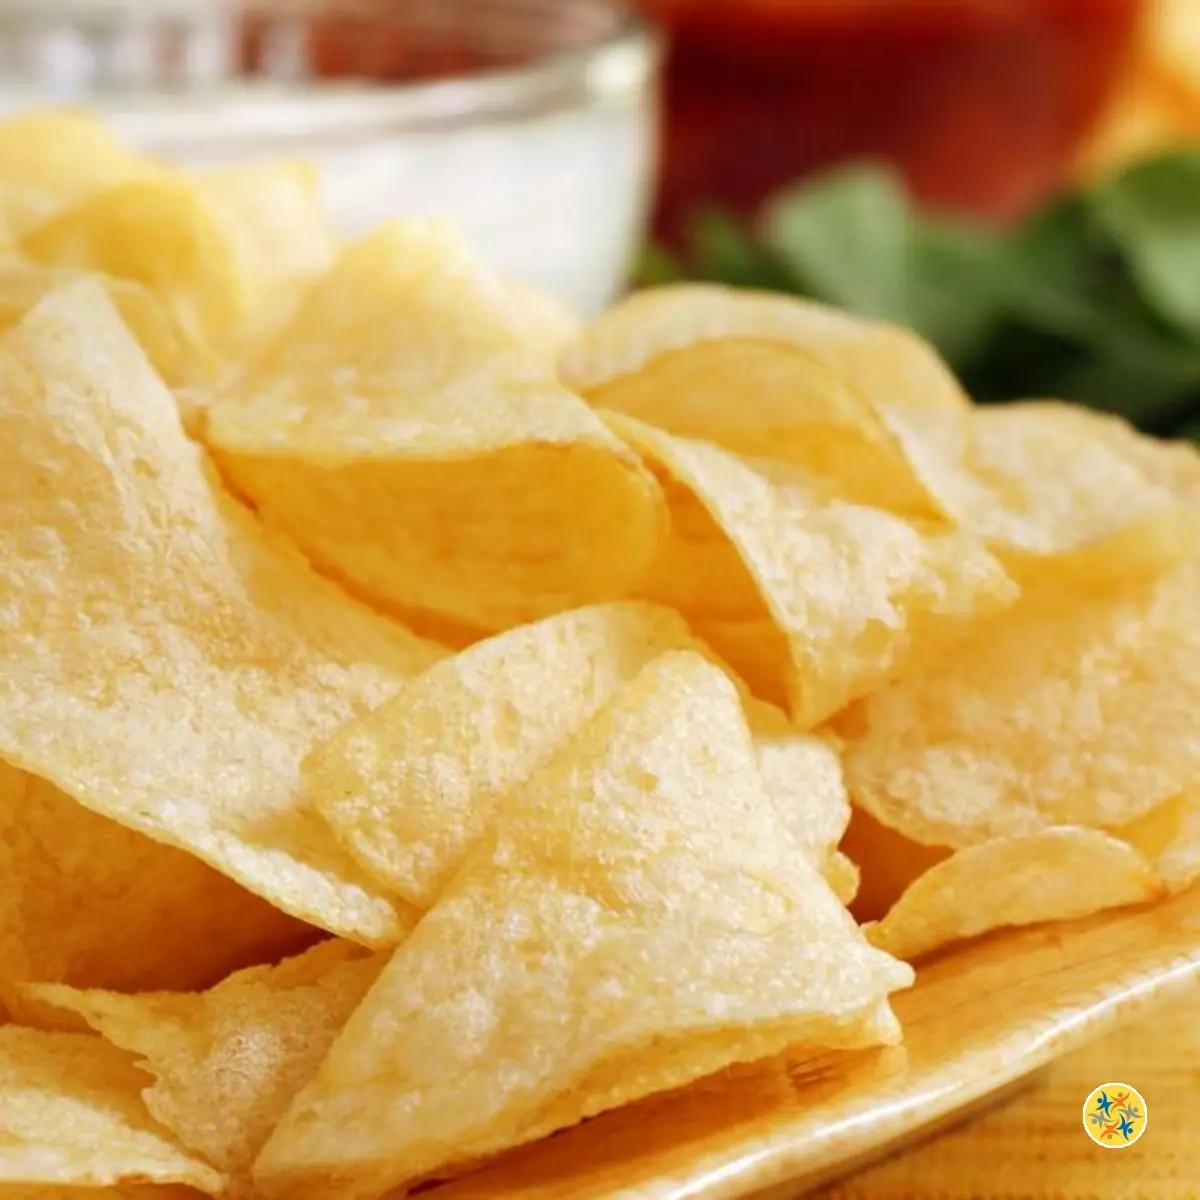 Les chips : Aliment qui attirent les mites alimentaires Dans Vos Placards